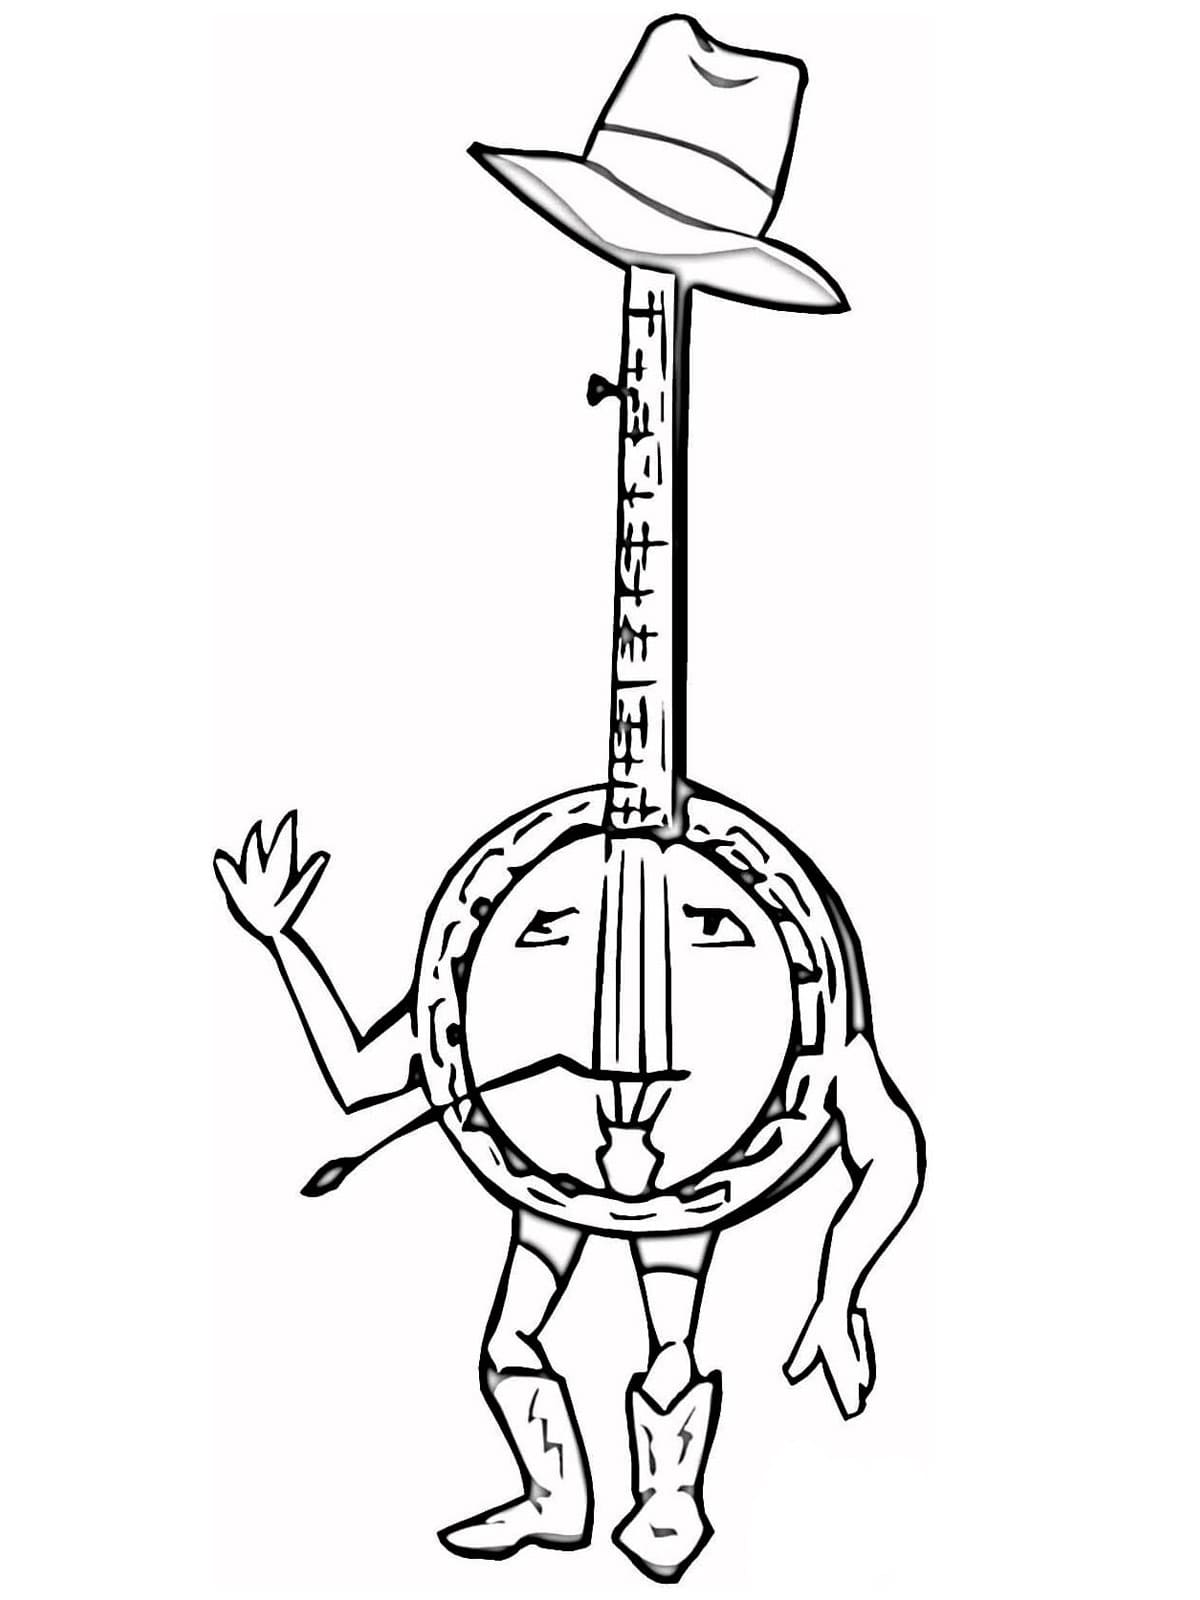 Banjo de Dessin Animé coloring page